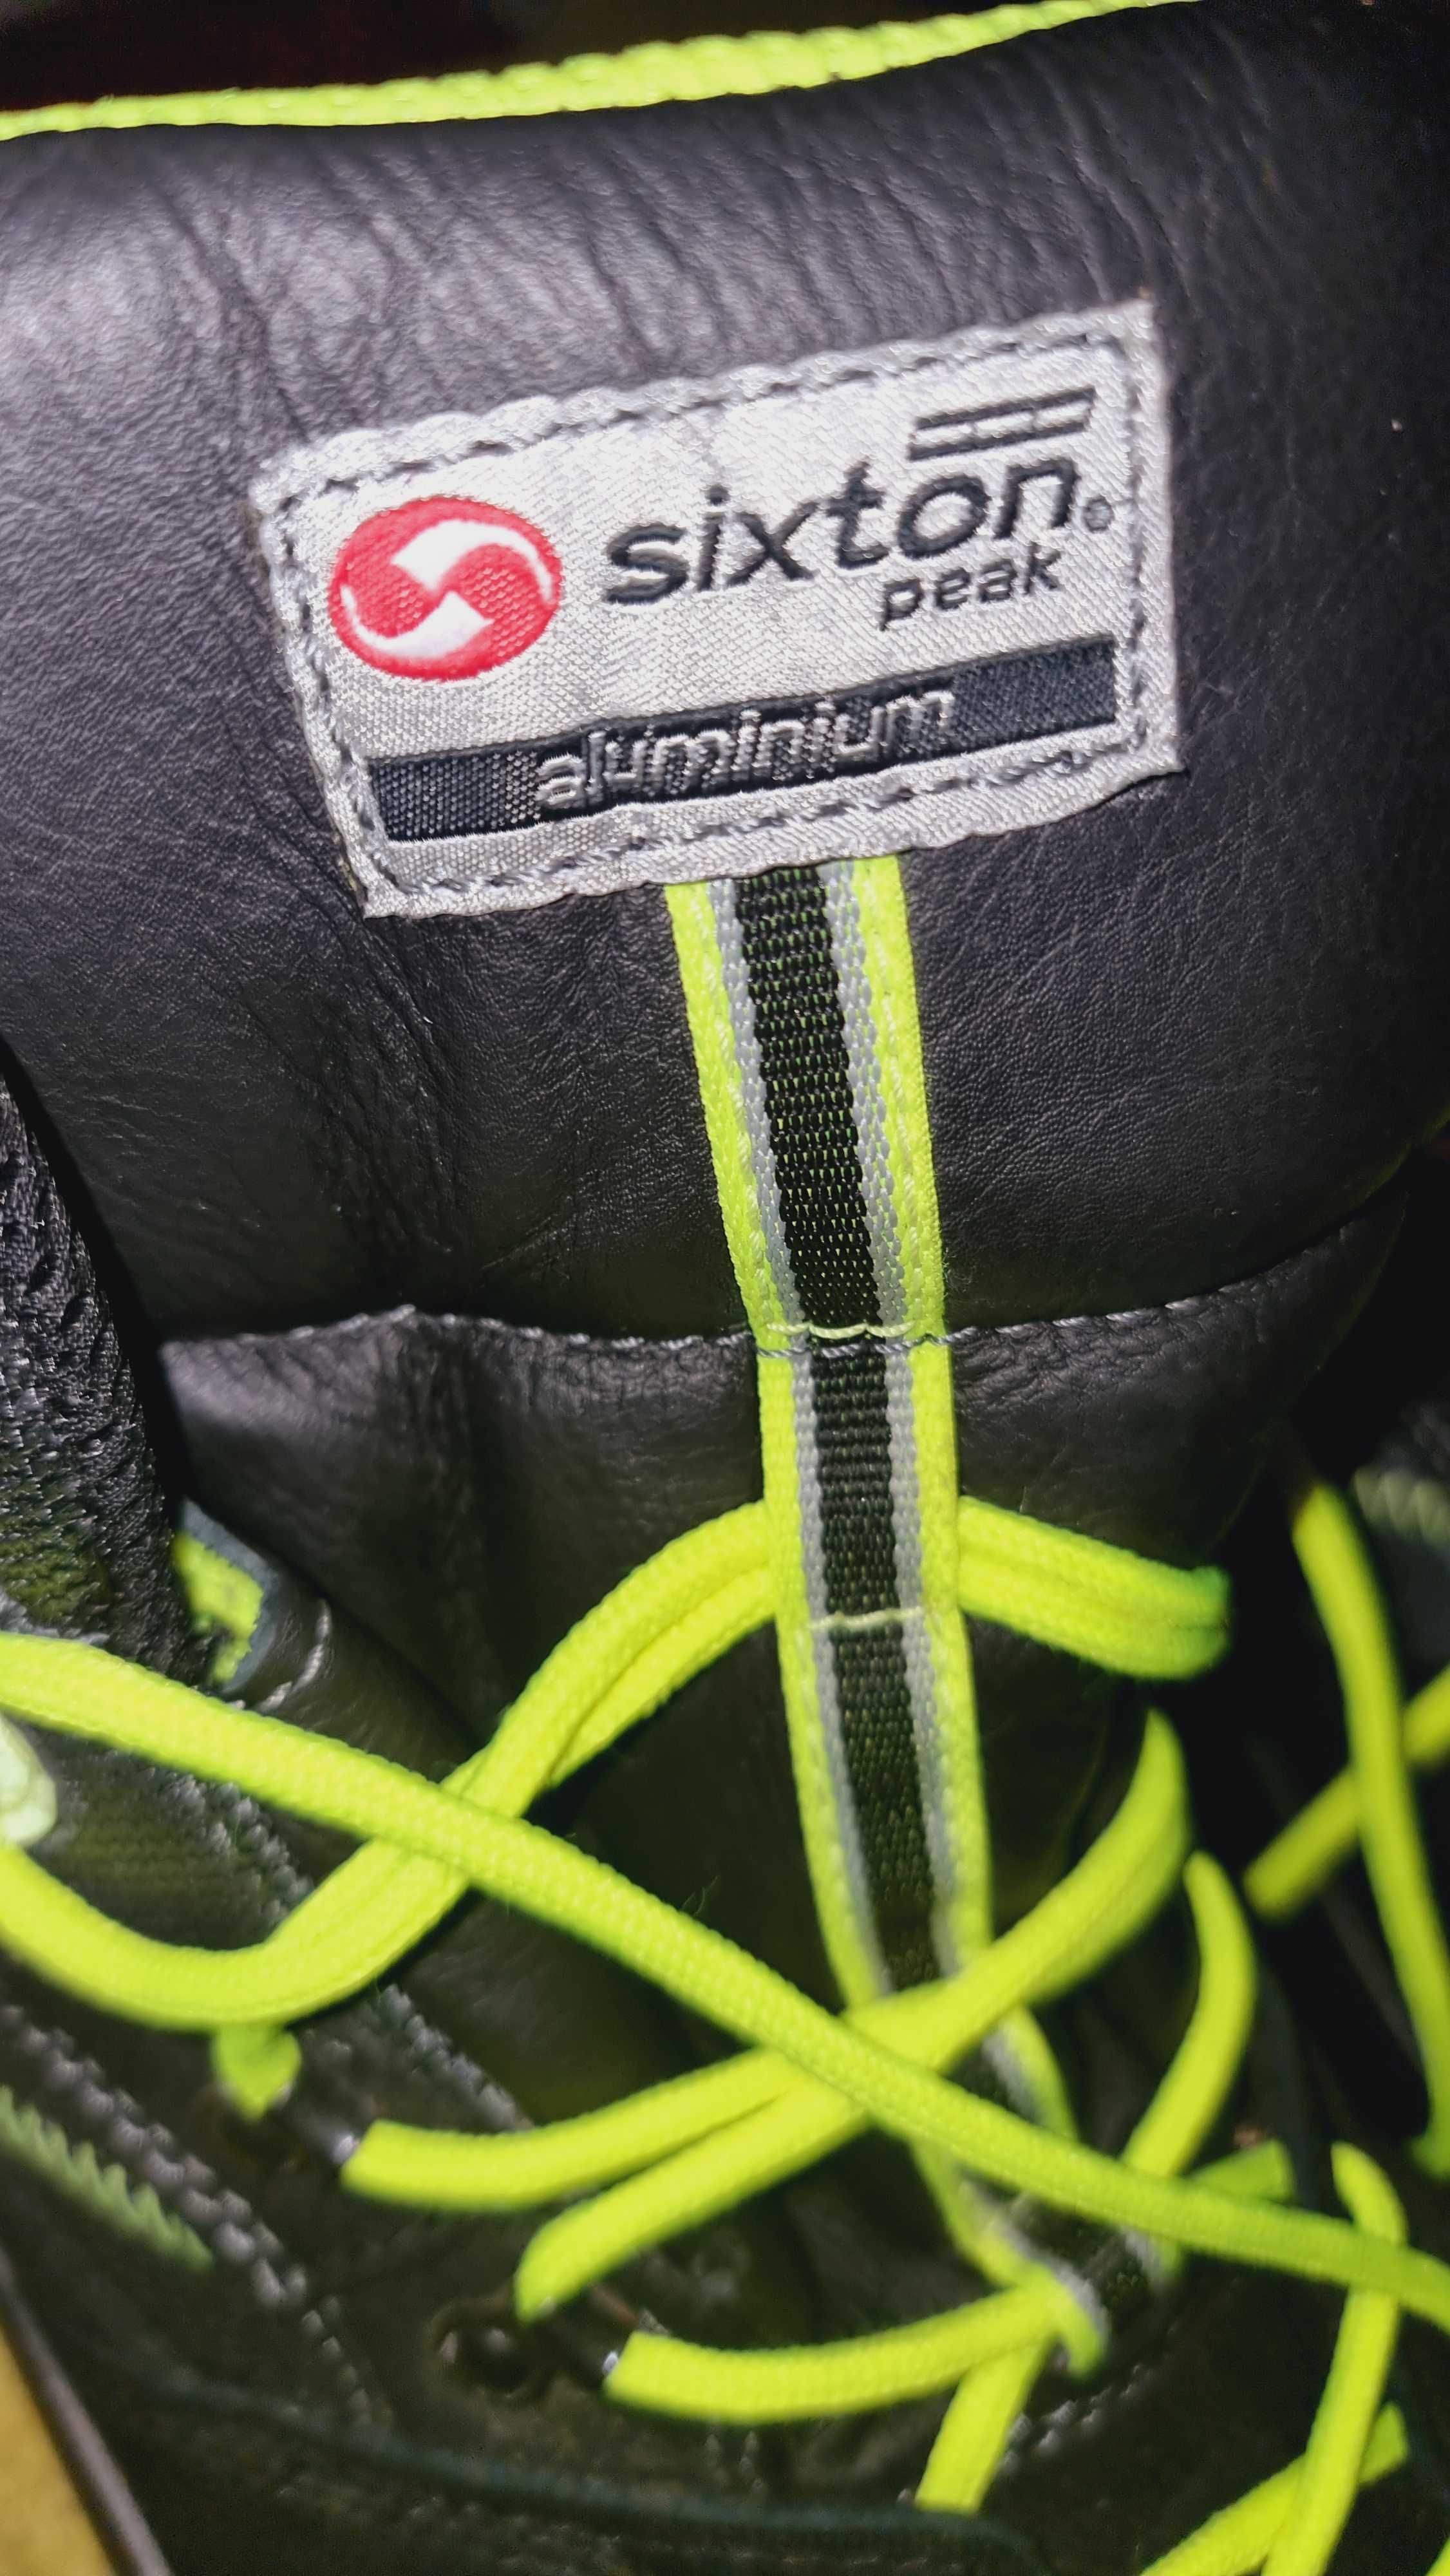 Sixton peak - w 100% legendarne włoskie buty robocze.